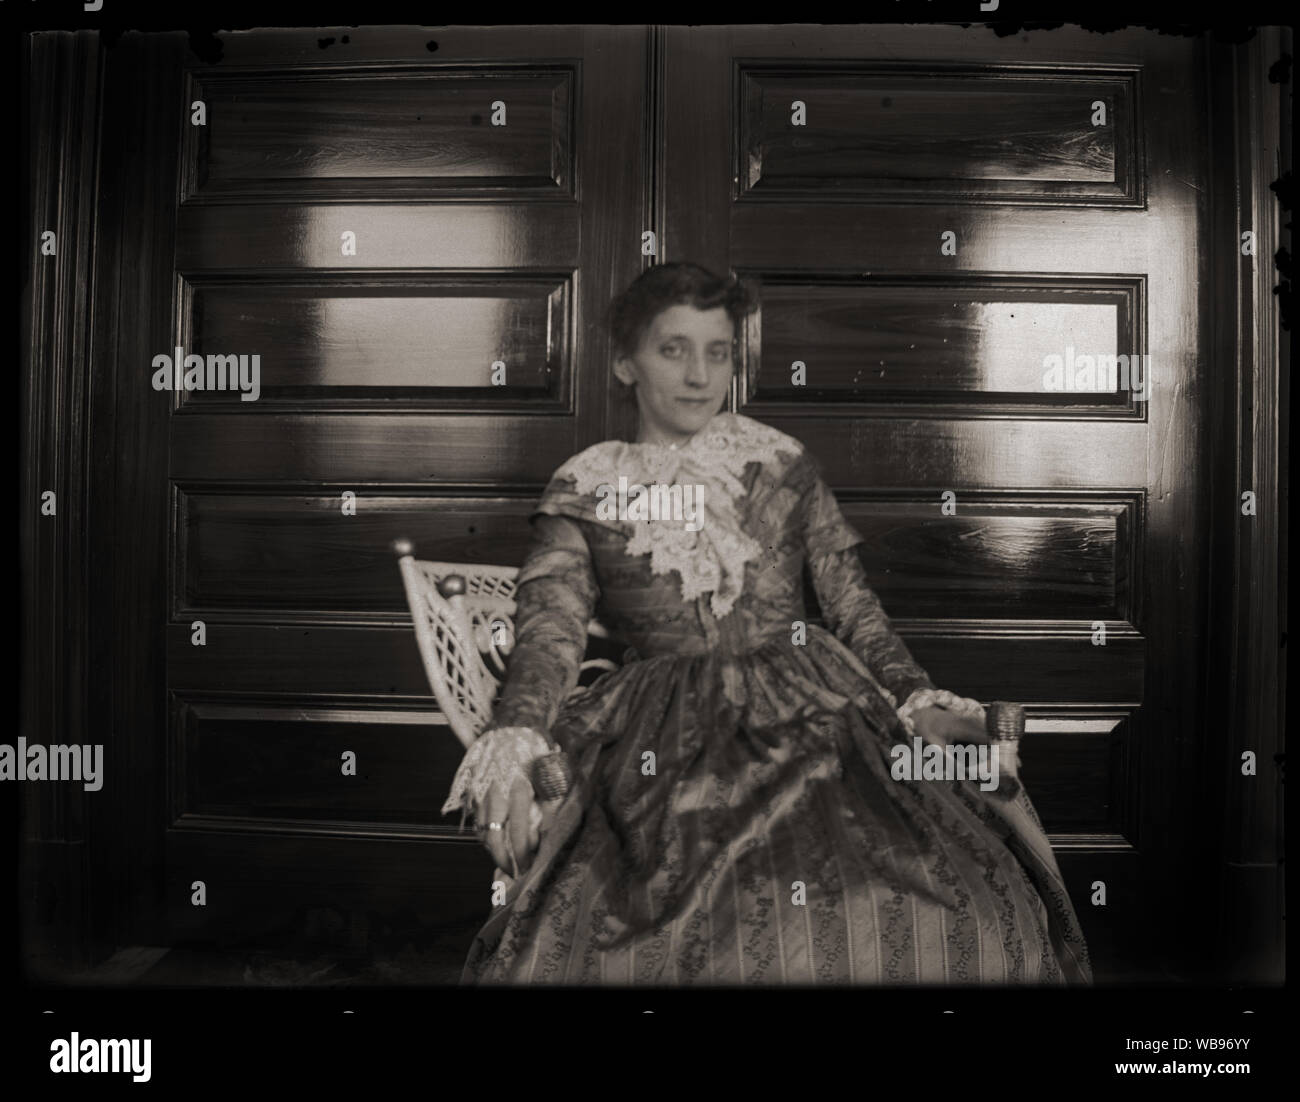 Ritratto di donna sorridente nella sedia di vimini indossando storico stile coloniale abito. Inizio periodo edoardiano fotografia amatoriale, scandita dall'originale 3x4 pollici lastra di vetro negativo circa primi 1900s. Foto Stock